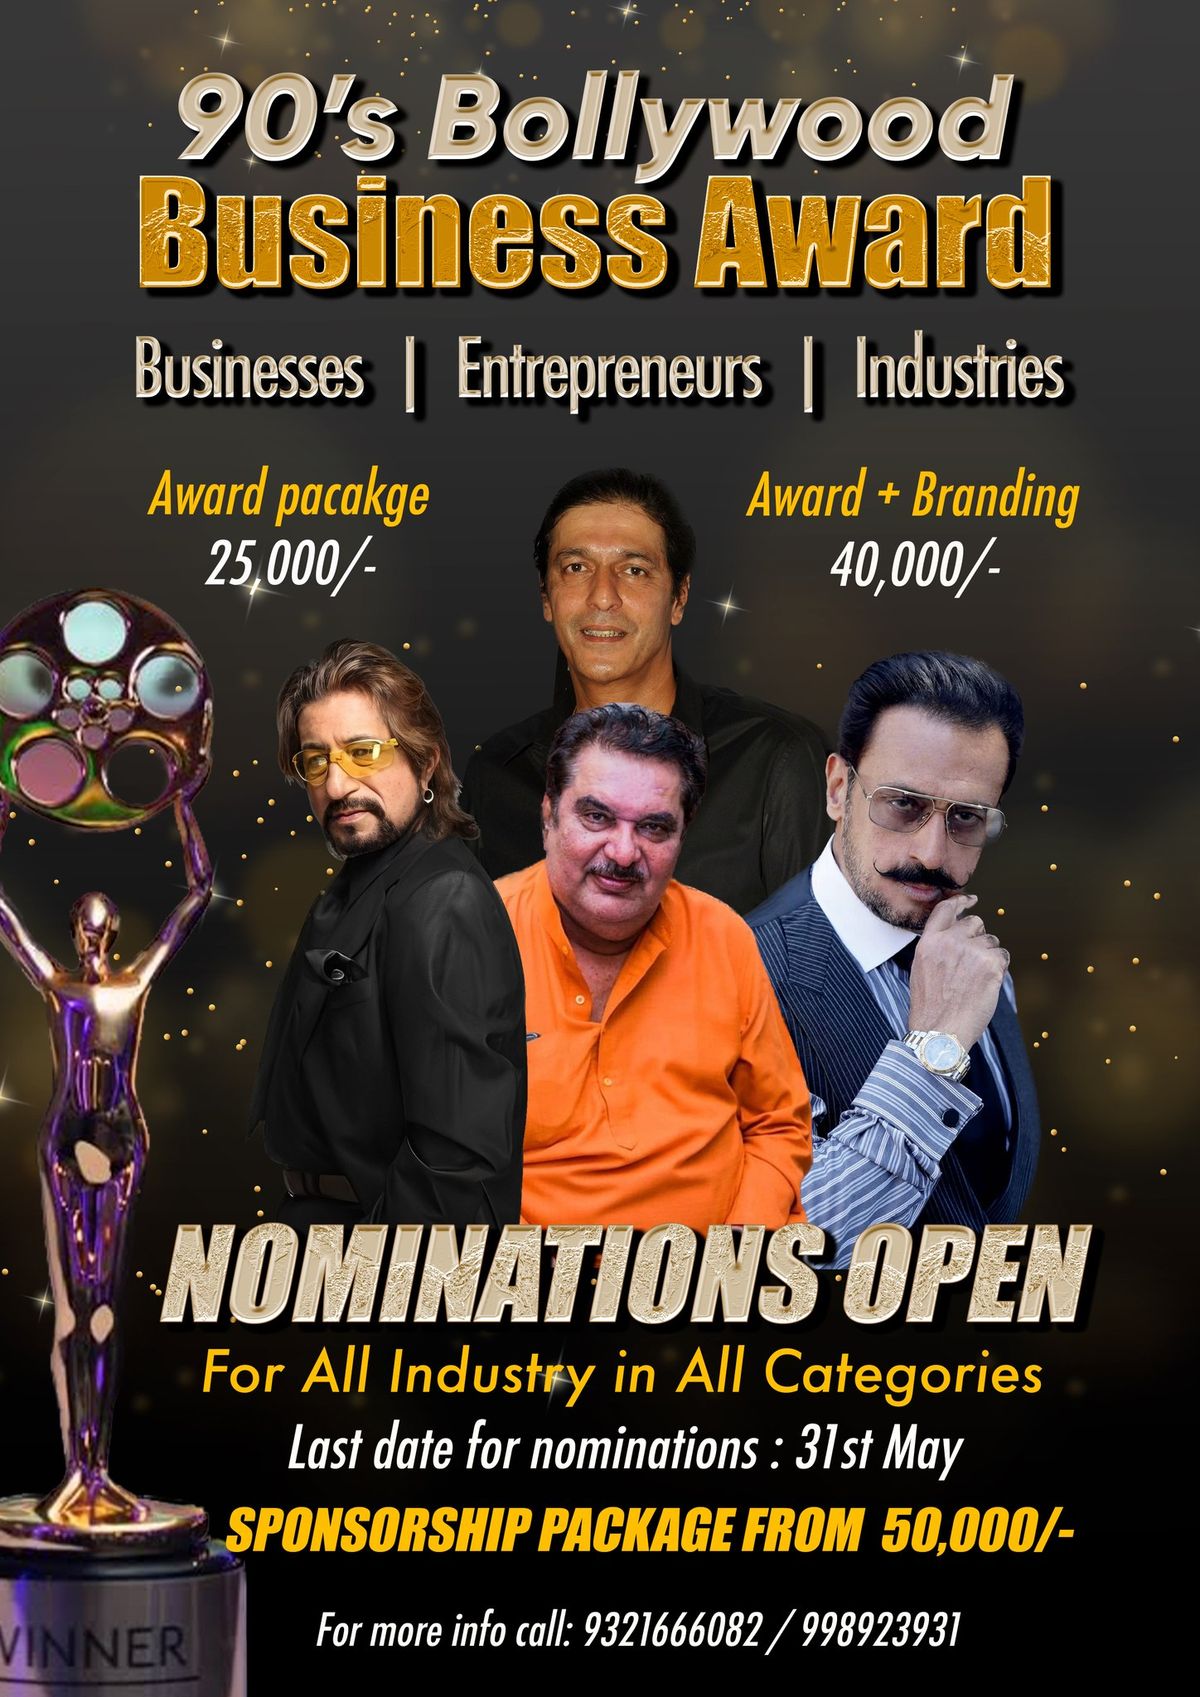 90's Bollywood Business Award